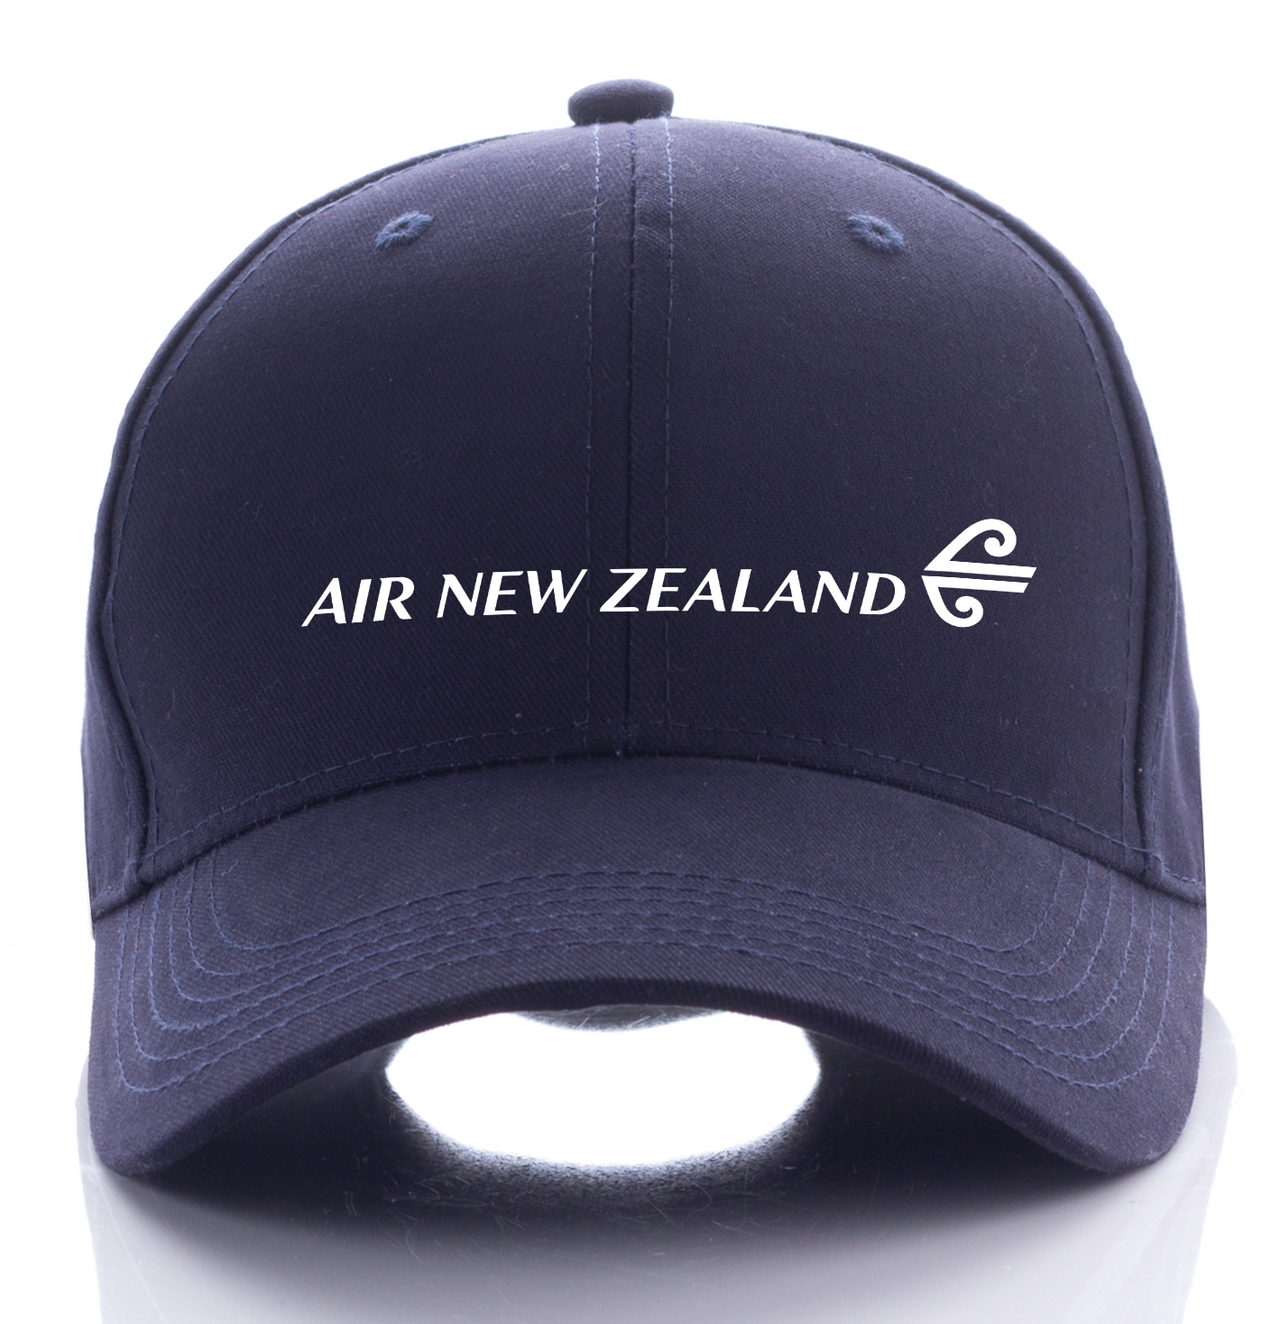 NEW ZEALAND AIRLINE DESIGNED CAP